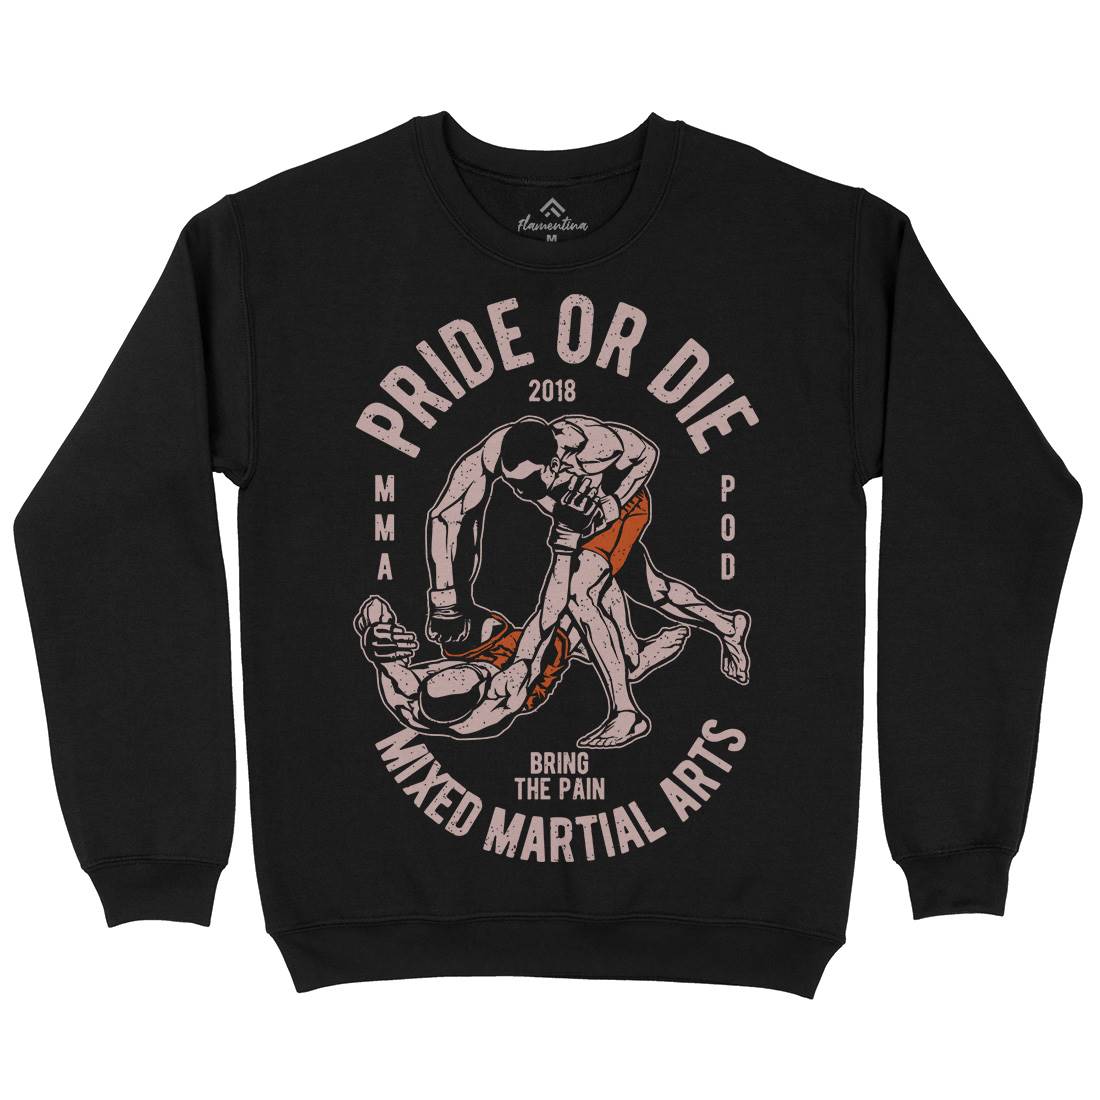 Pride Or Die Kids Crew Neck Sweatshirt Sport A735